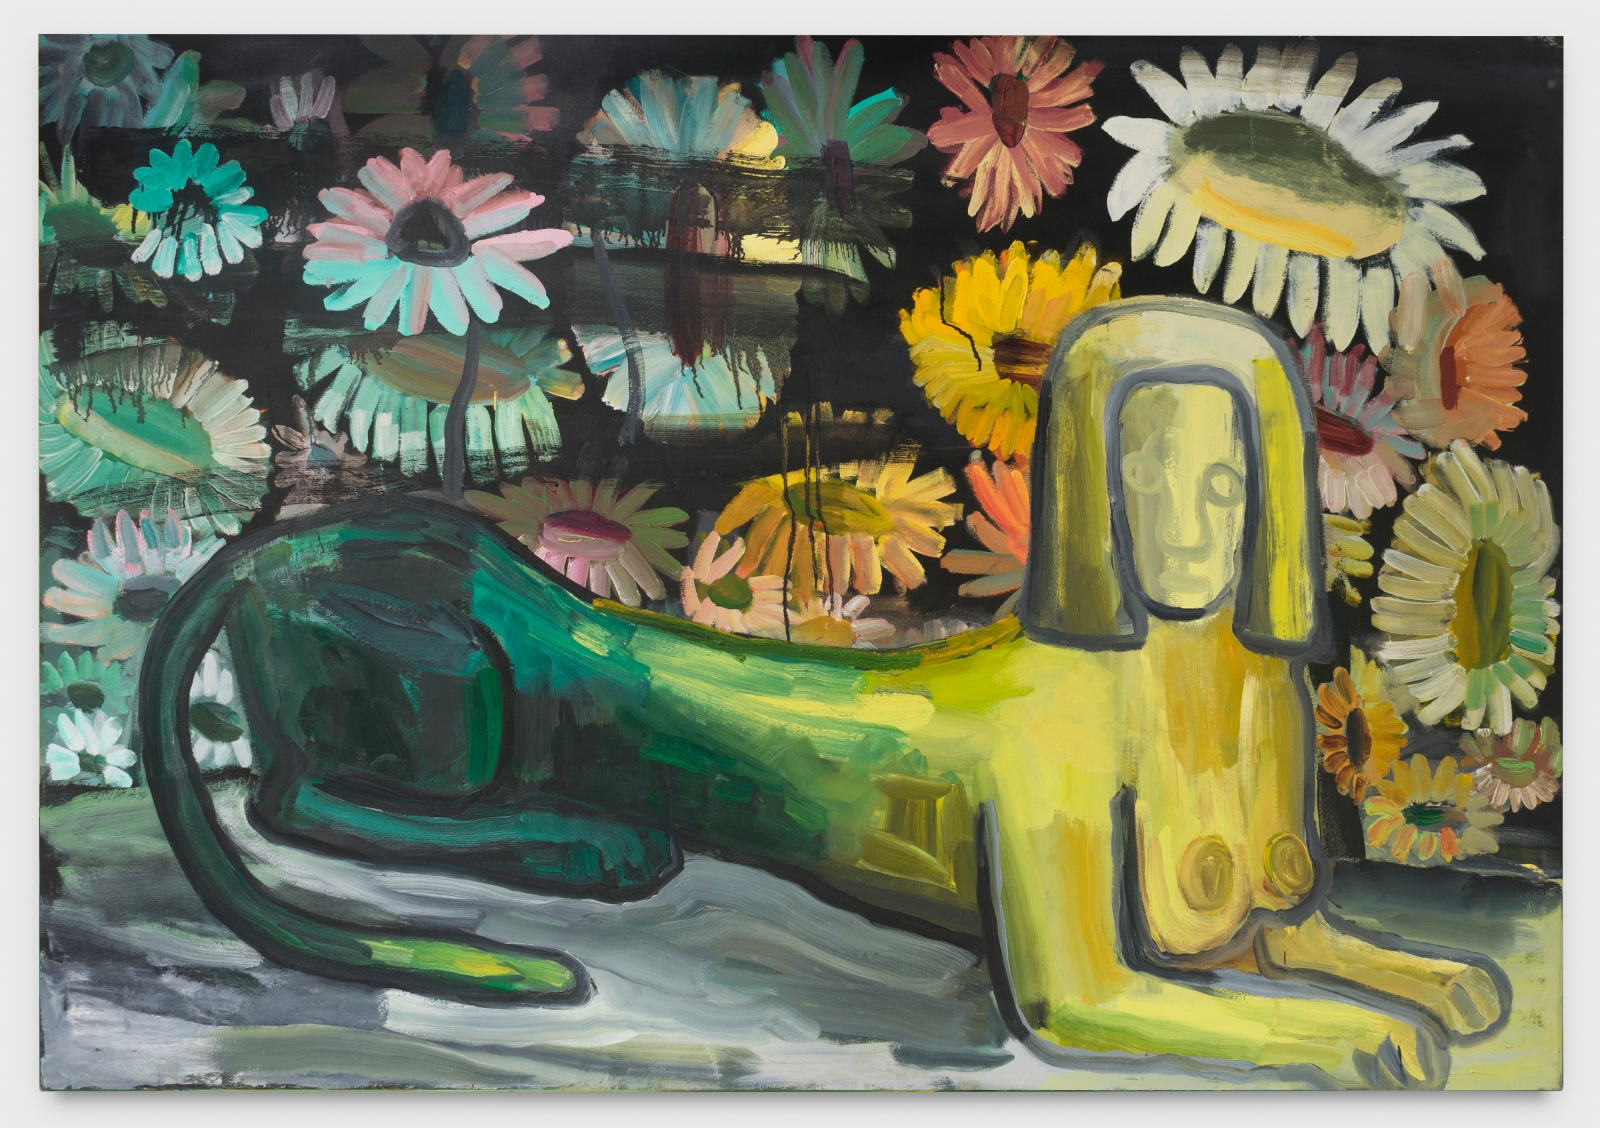 Judith Linhares
Sphinx, 1990
acrylic on canvas
54 x 78 ins.
137.2 x 198.1 cm